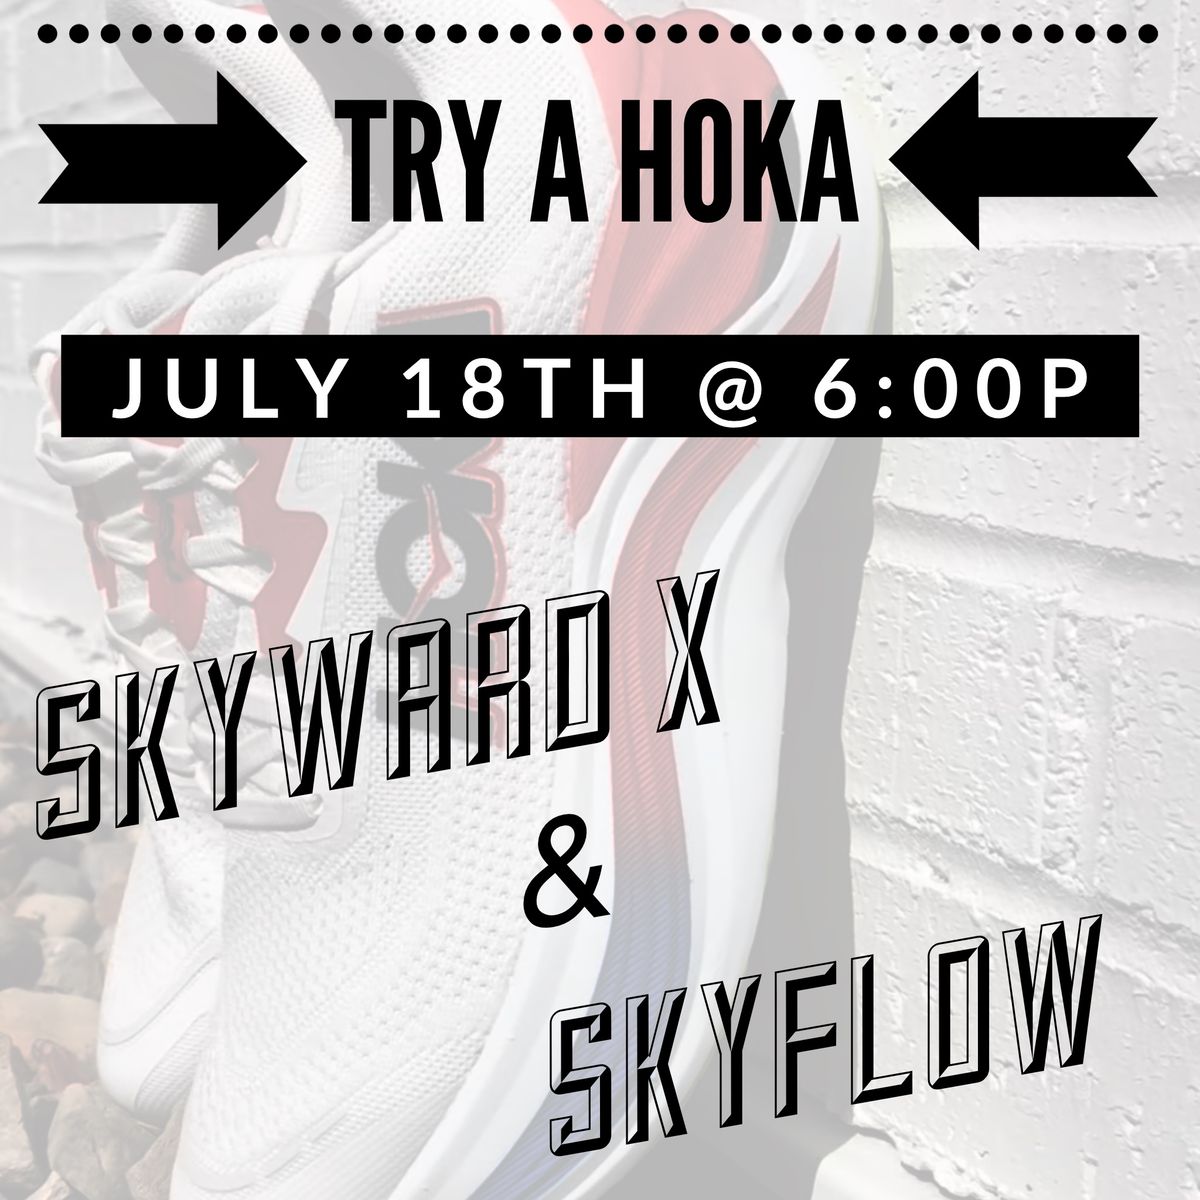 Skyward X & Skyflow Hoka Party!